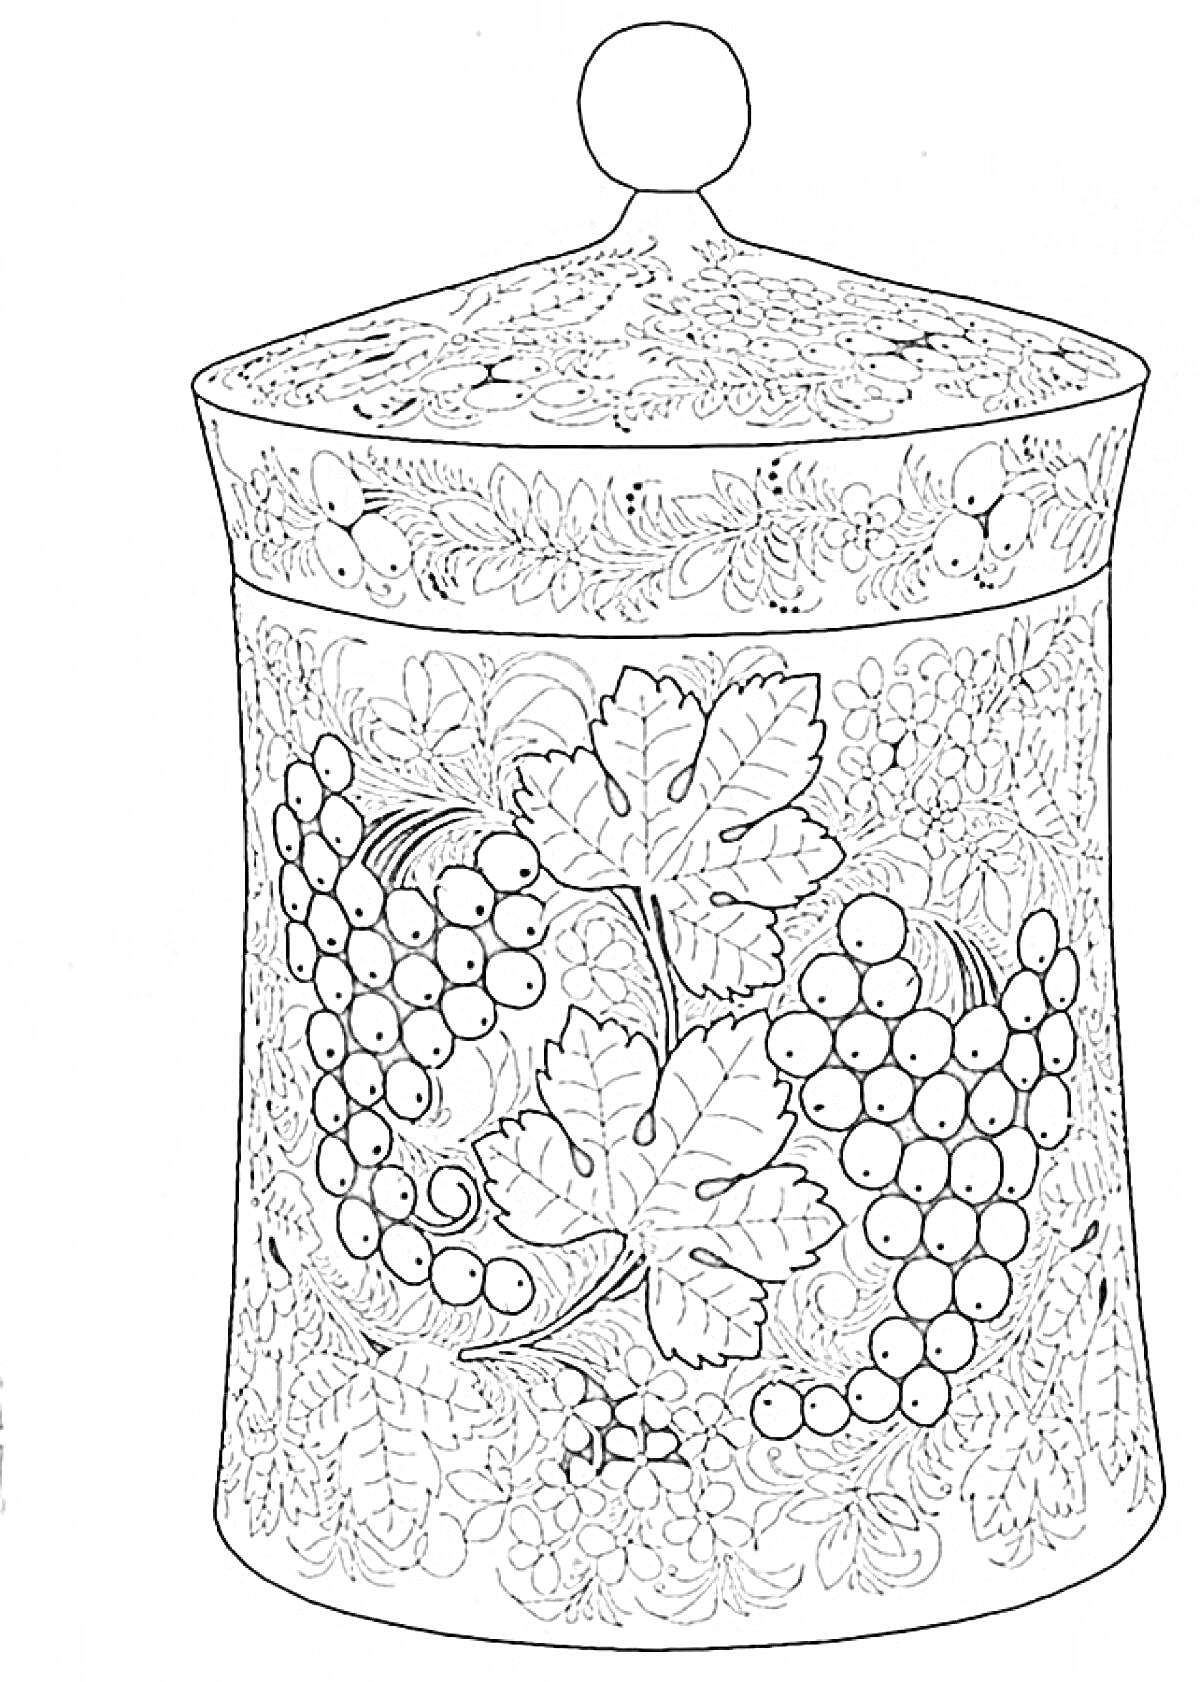 Раскраска Хохломская расписная банка с крышкой, украшенная виноградом и листьями